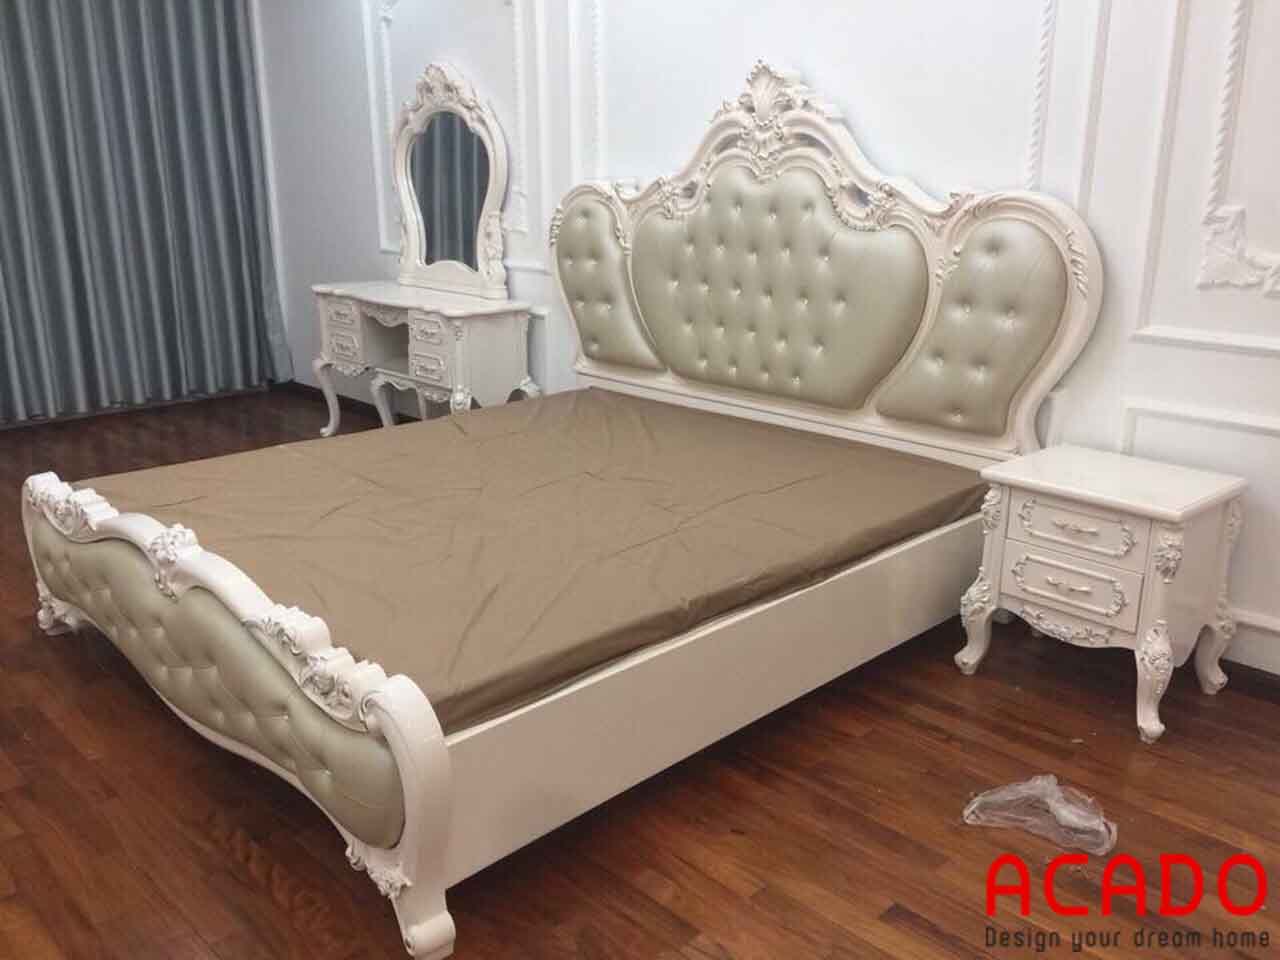 Phần đầu giường thiết kế như một chiếc vương miện công chúa